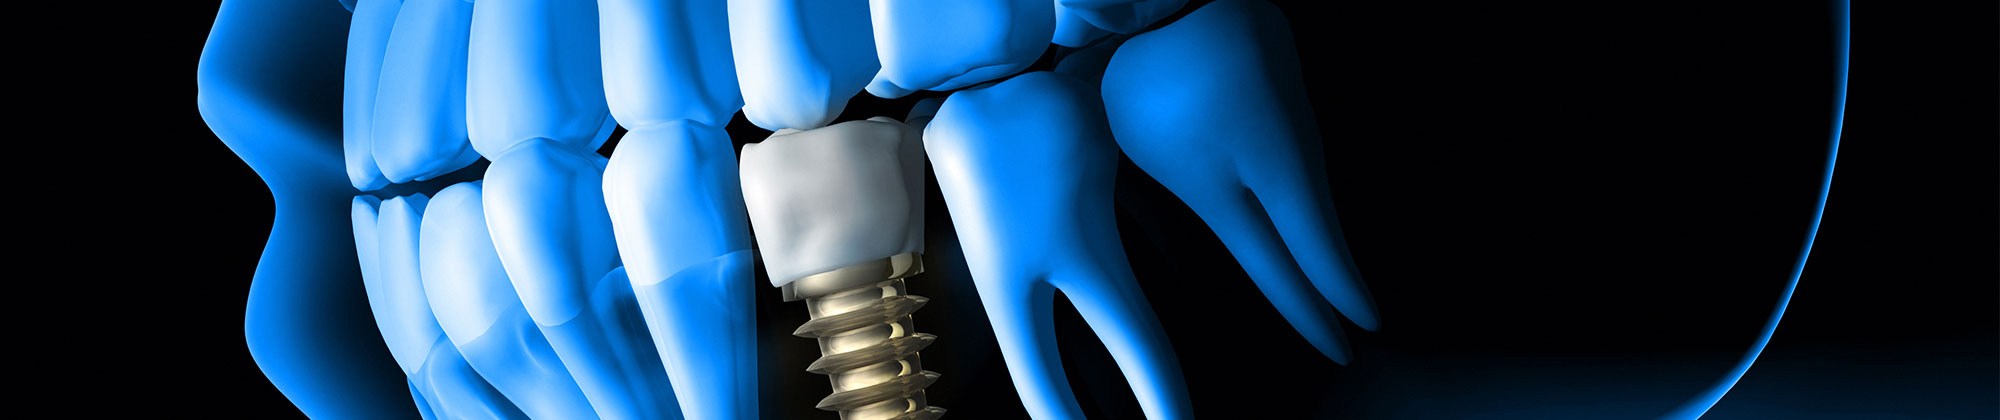 3D scan of dental implant